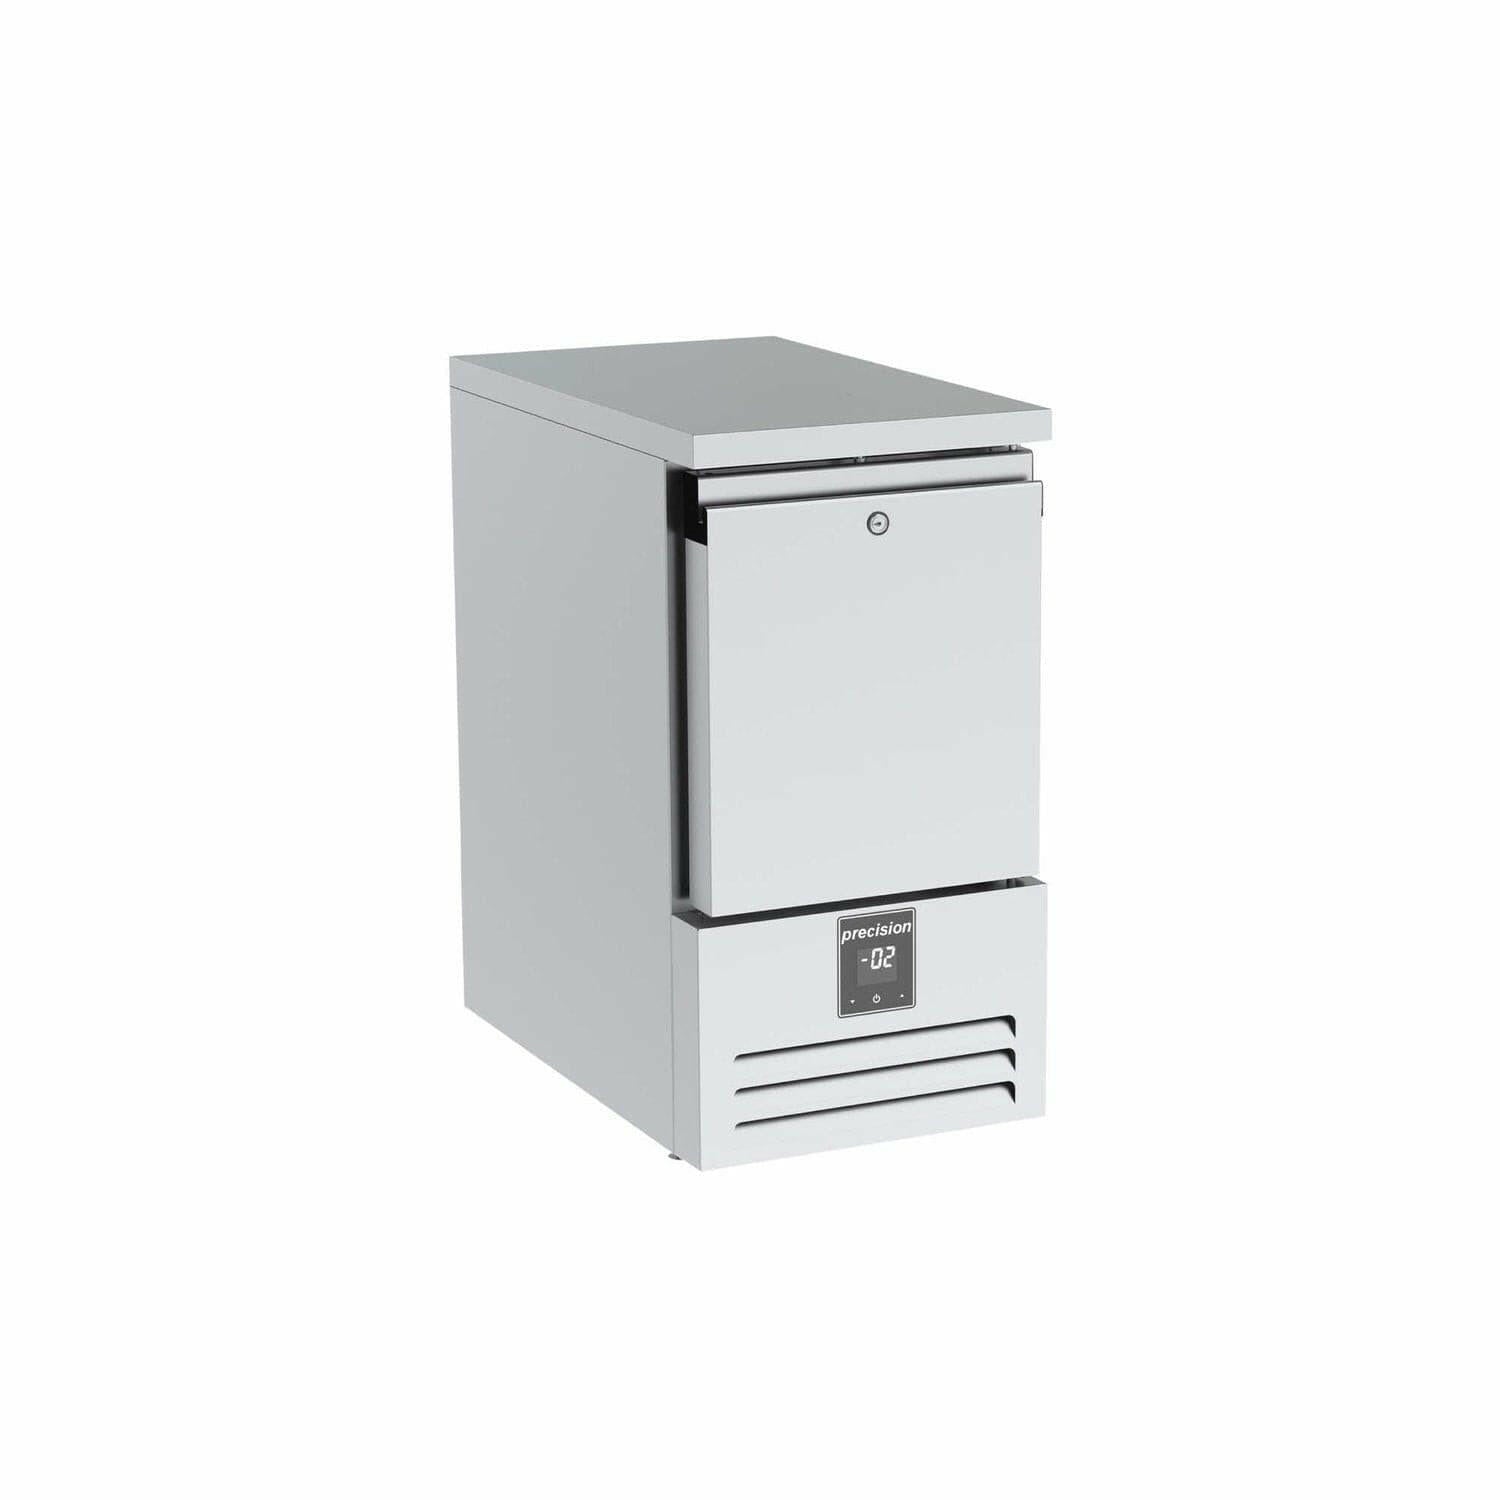 Precision LSS 150 Double Door Compact Undercounter Freezer 48 Litres